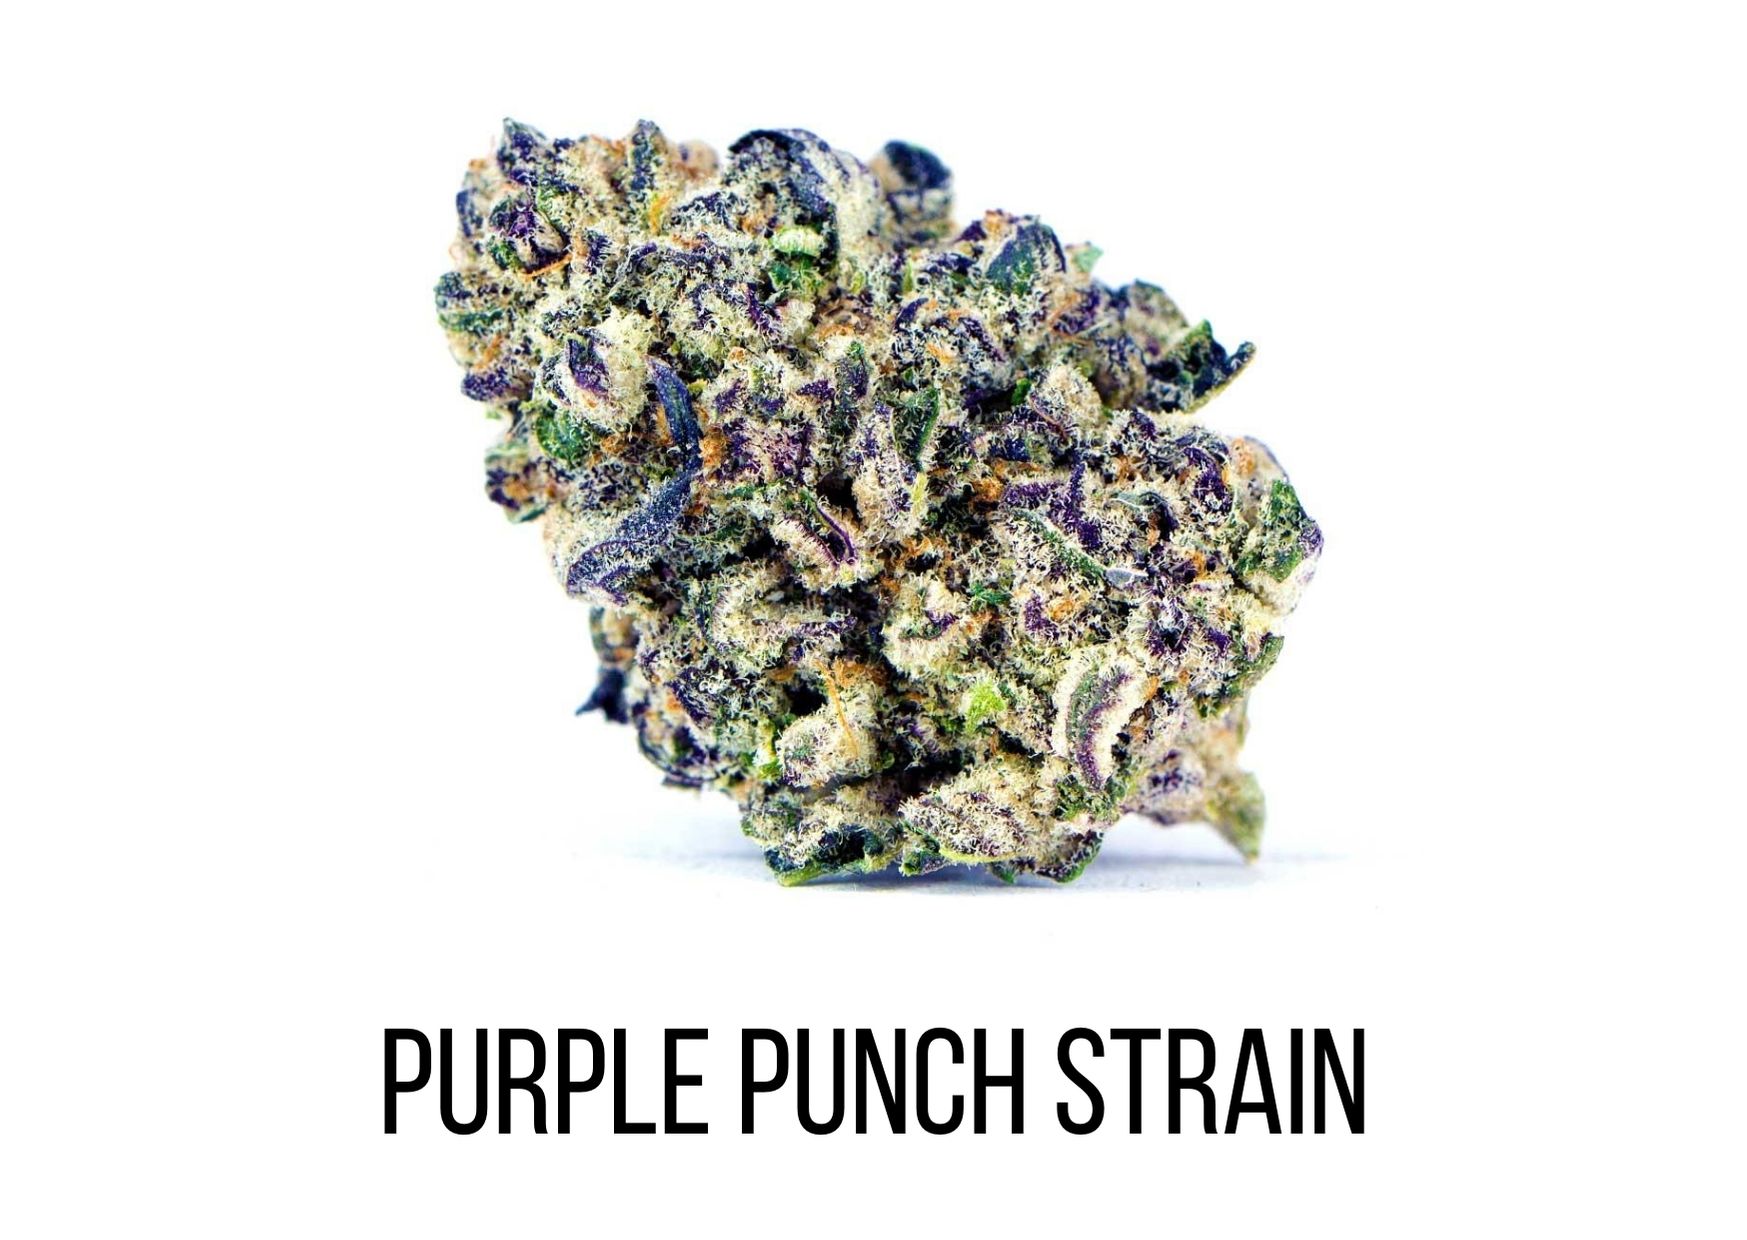 purple punch strain growing info